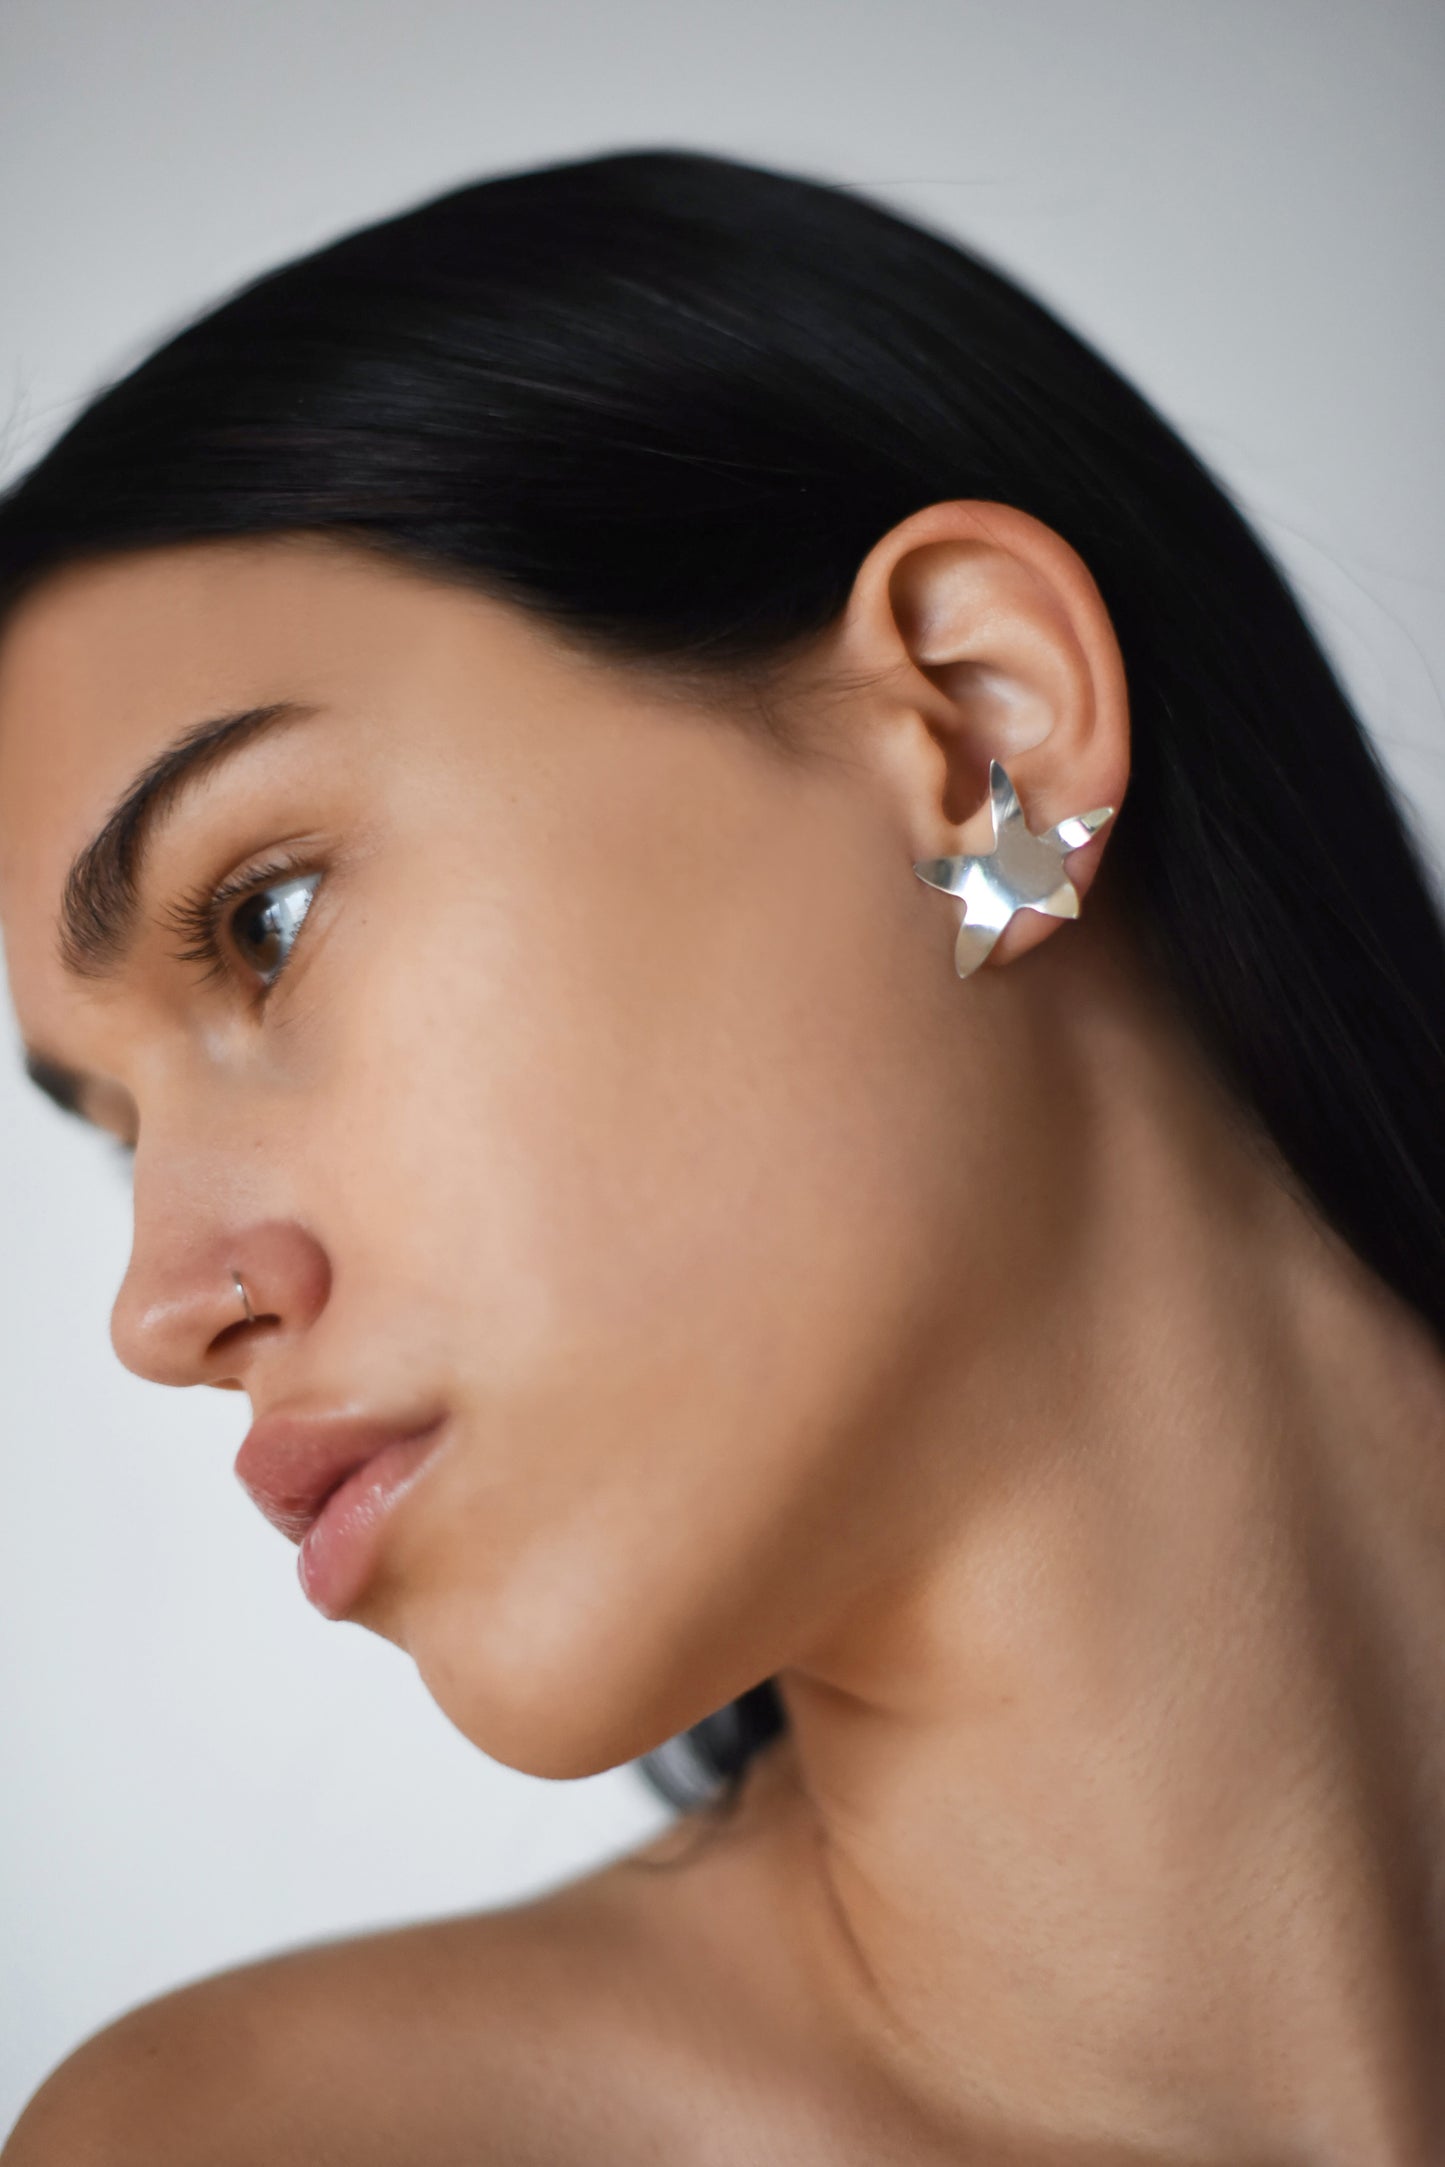 Sea Star earrings 02